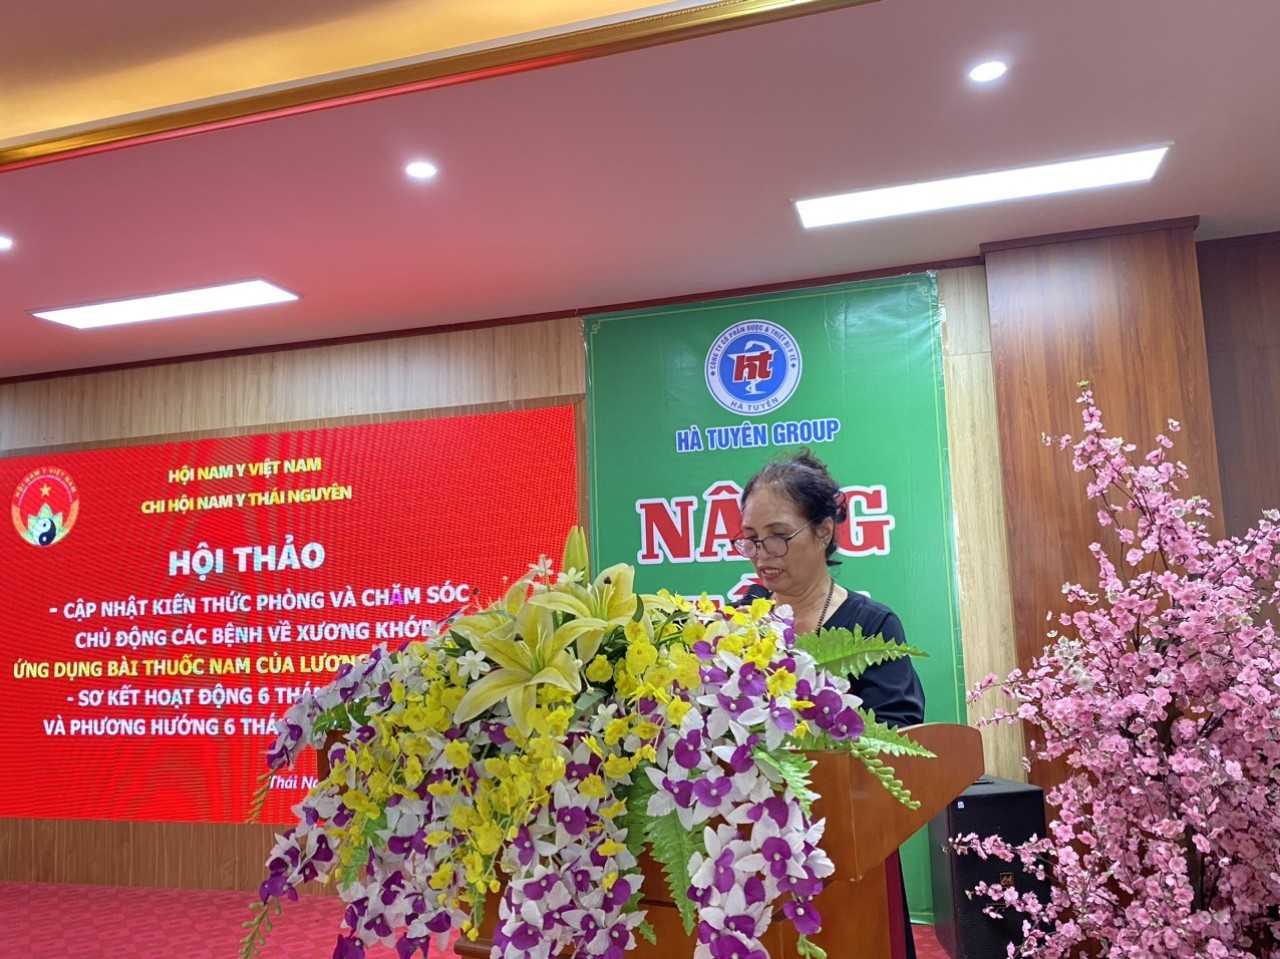 Chi hội Nam y tỉnh Thái Nguyên tổ chức hội thảo chia sẻ về bệnh xương khớp theo YHCT